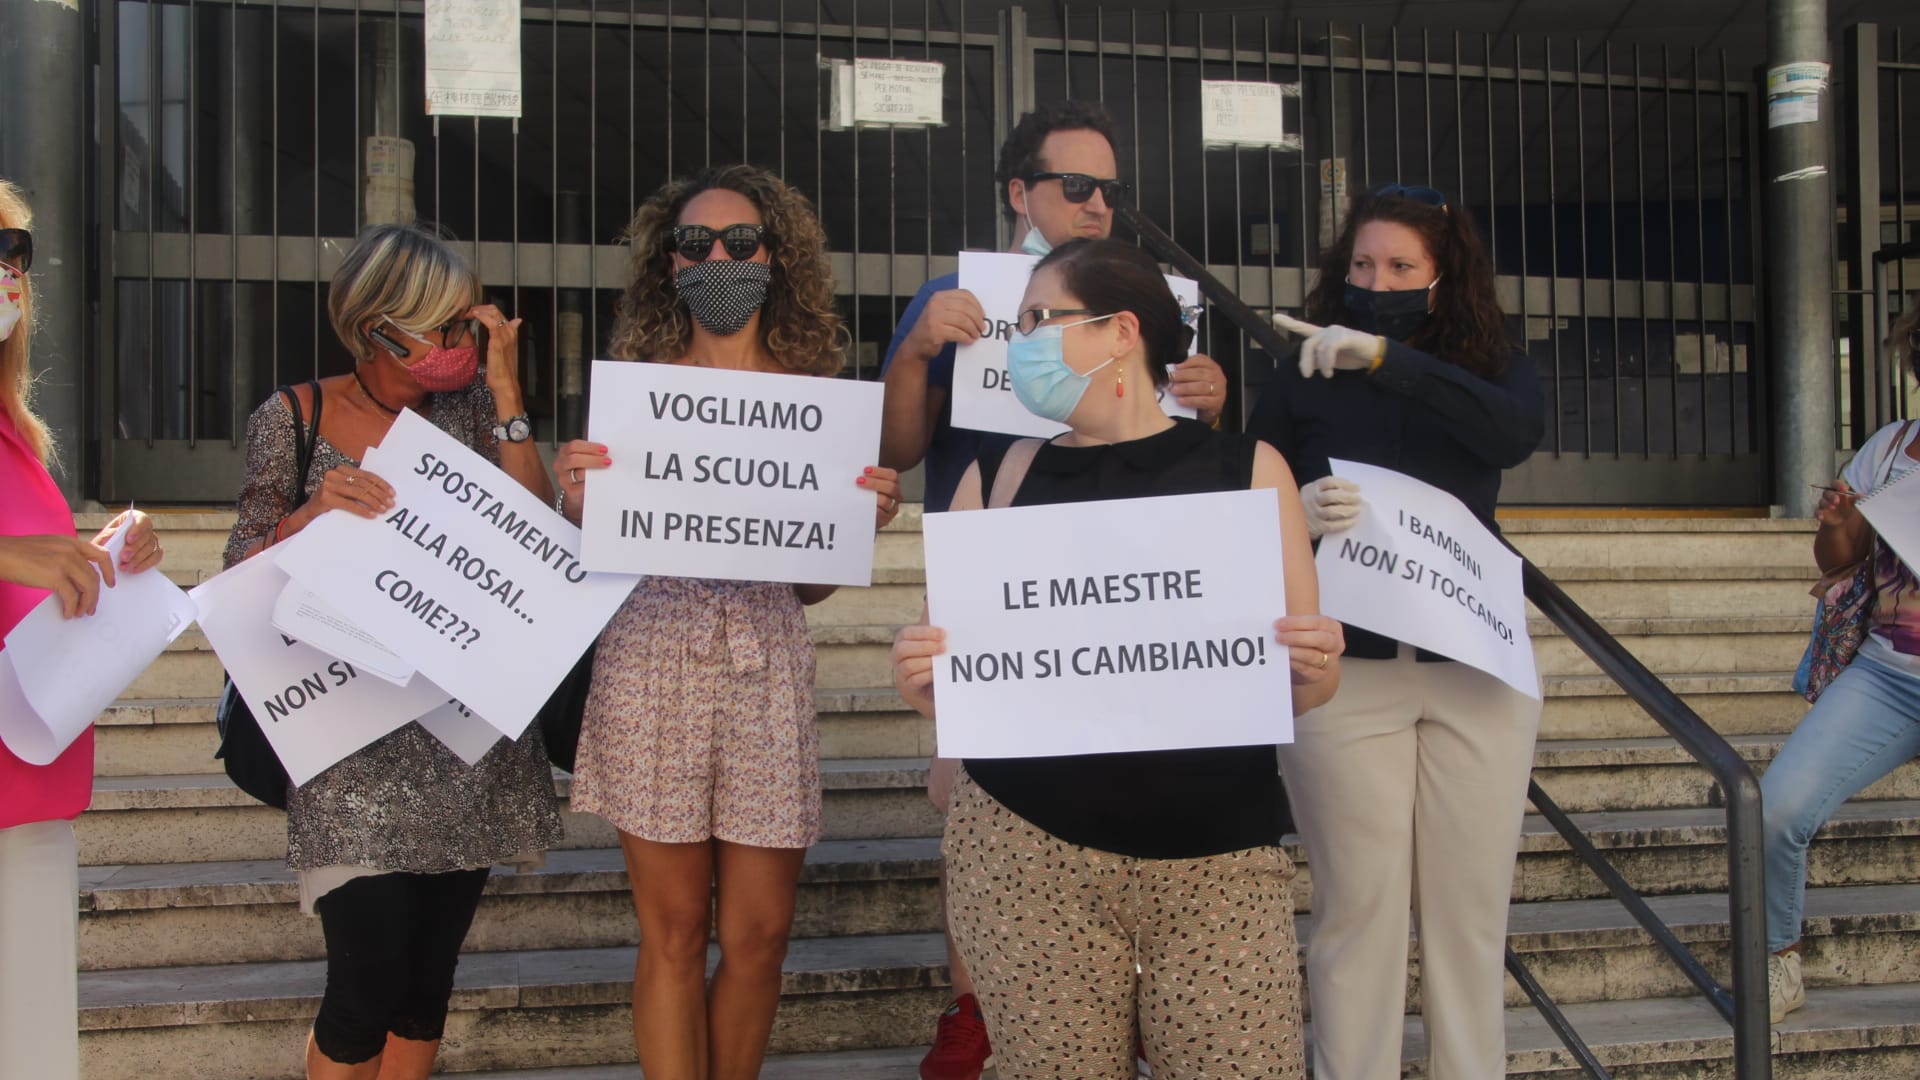 VIDEO: Scuola: in Toscana 60% di recupero in presenza, protesta genitori a Firenze “troppe incertezze”